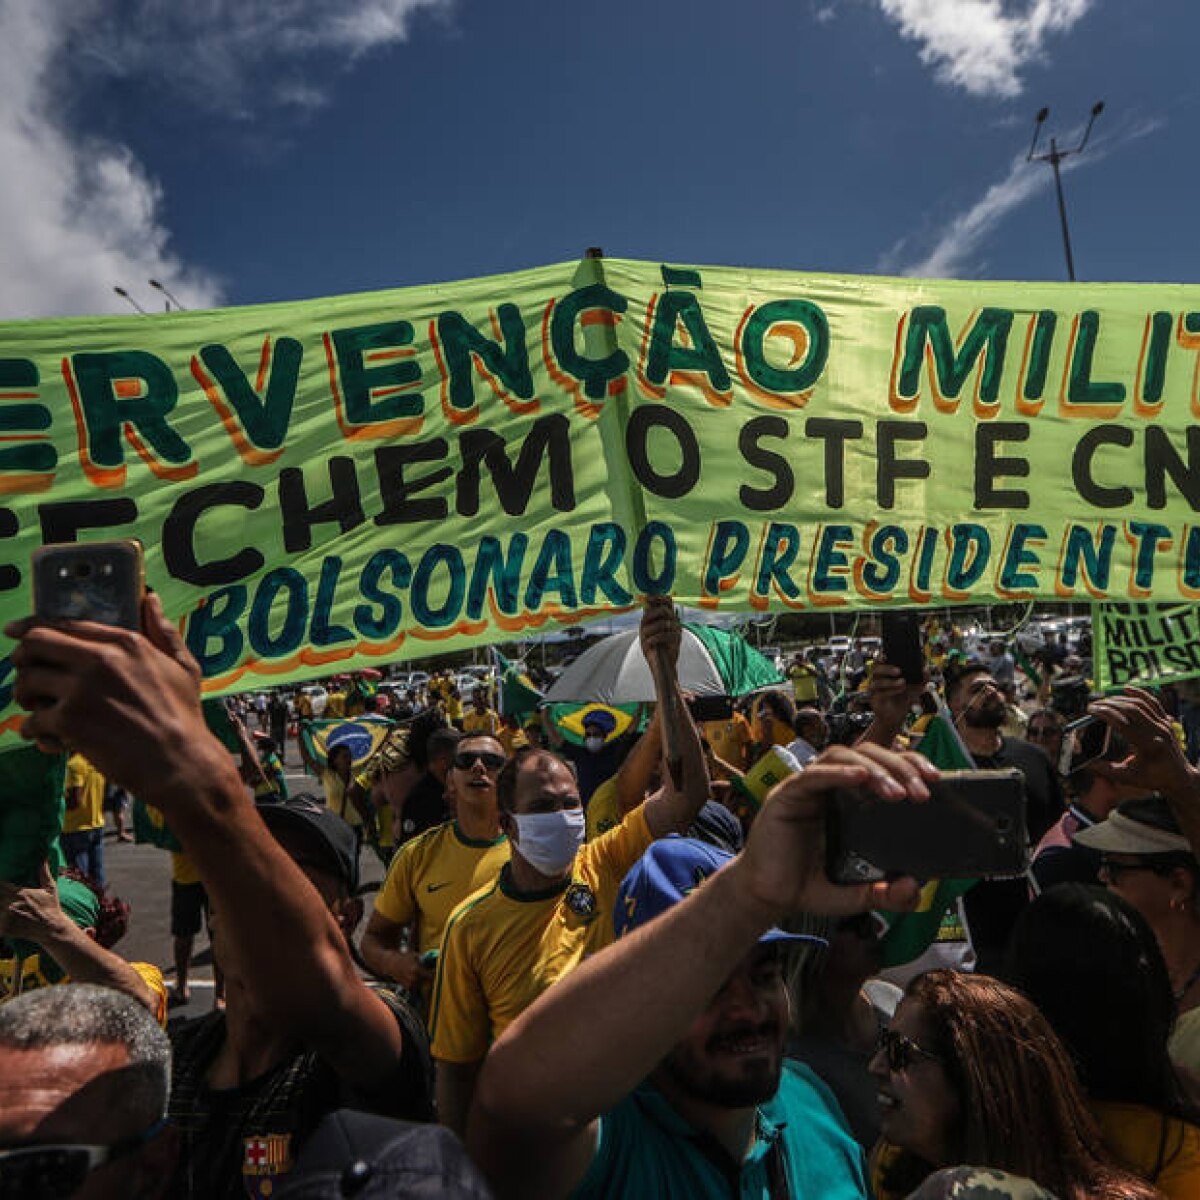 Discurso de Bolsonaro 'incentiva desobediência' e é 'escalada ...